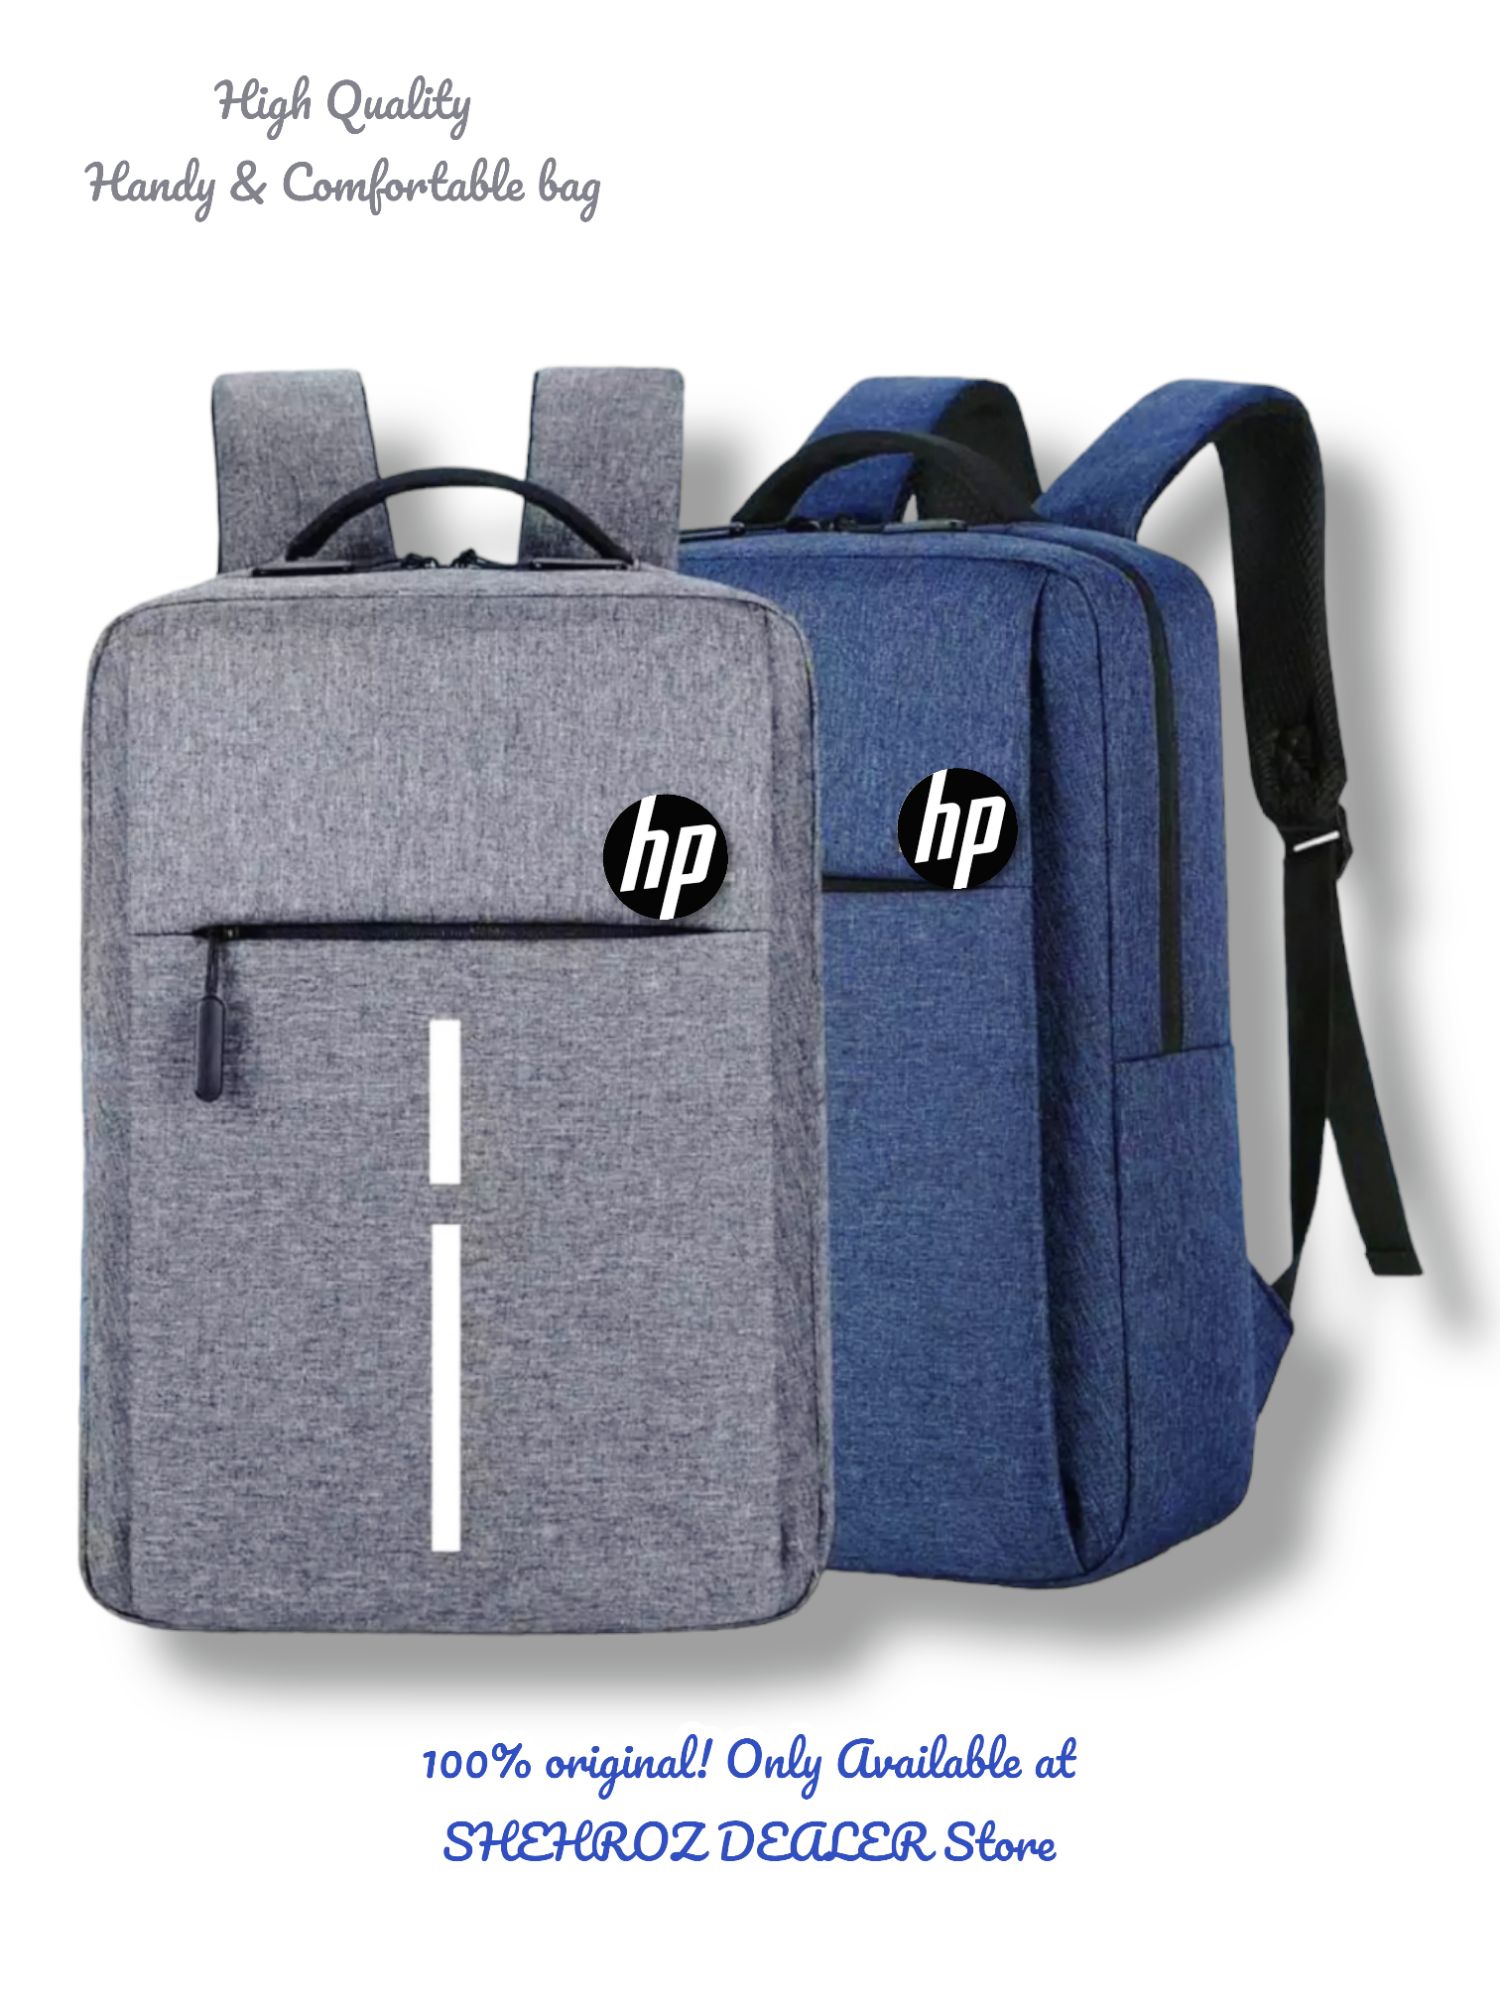 Croma 17 inch Laptop Backpack (CRXL5206, Black) | Dealsmagnet.com